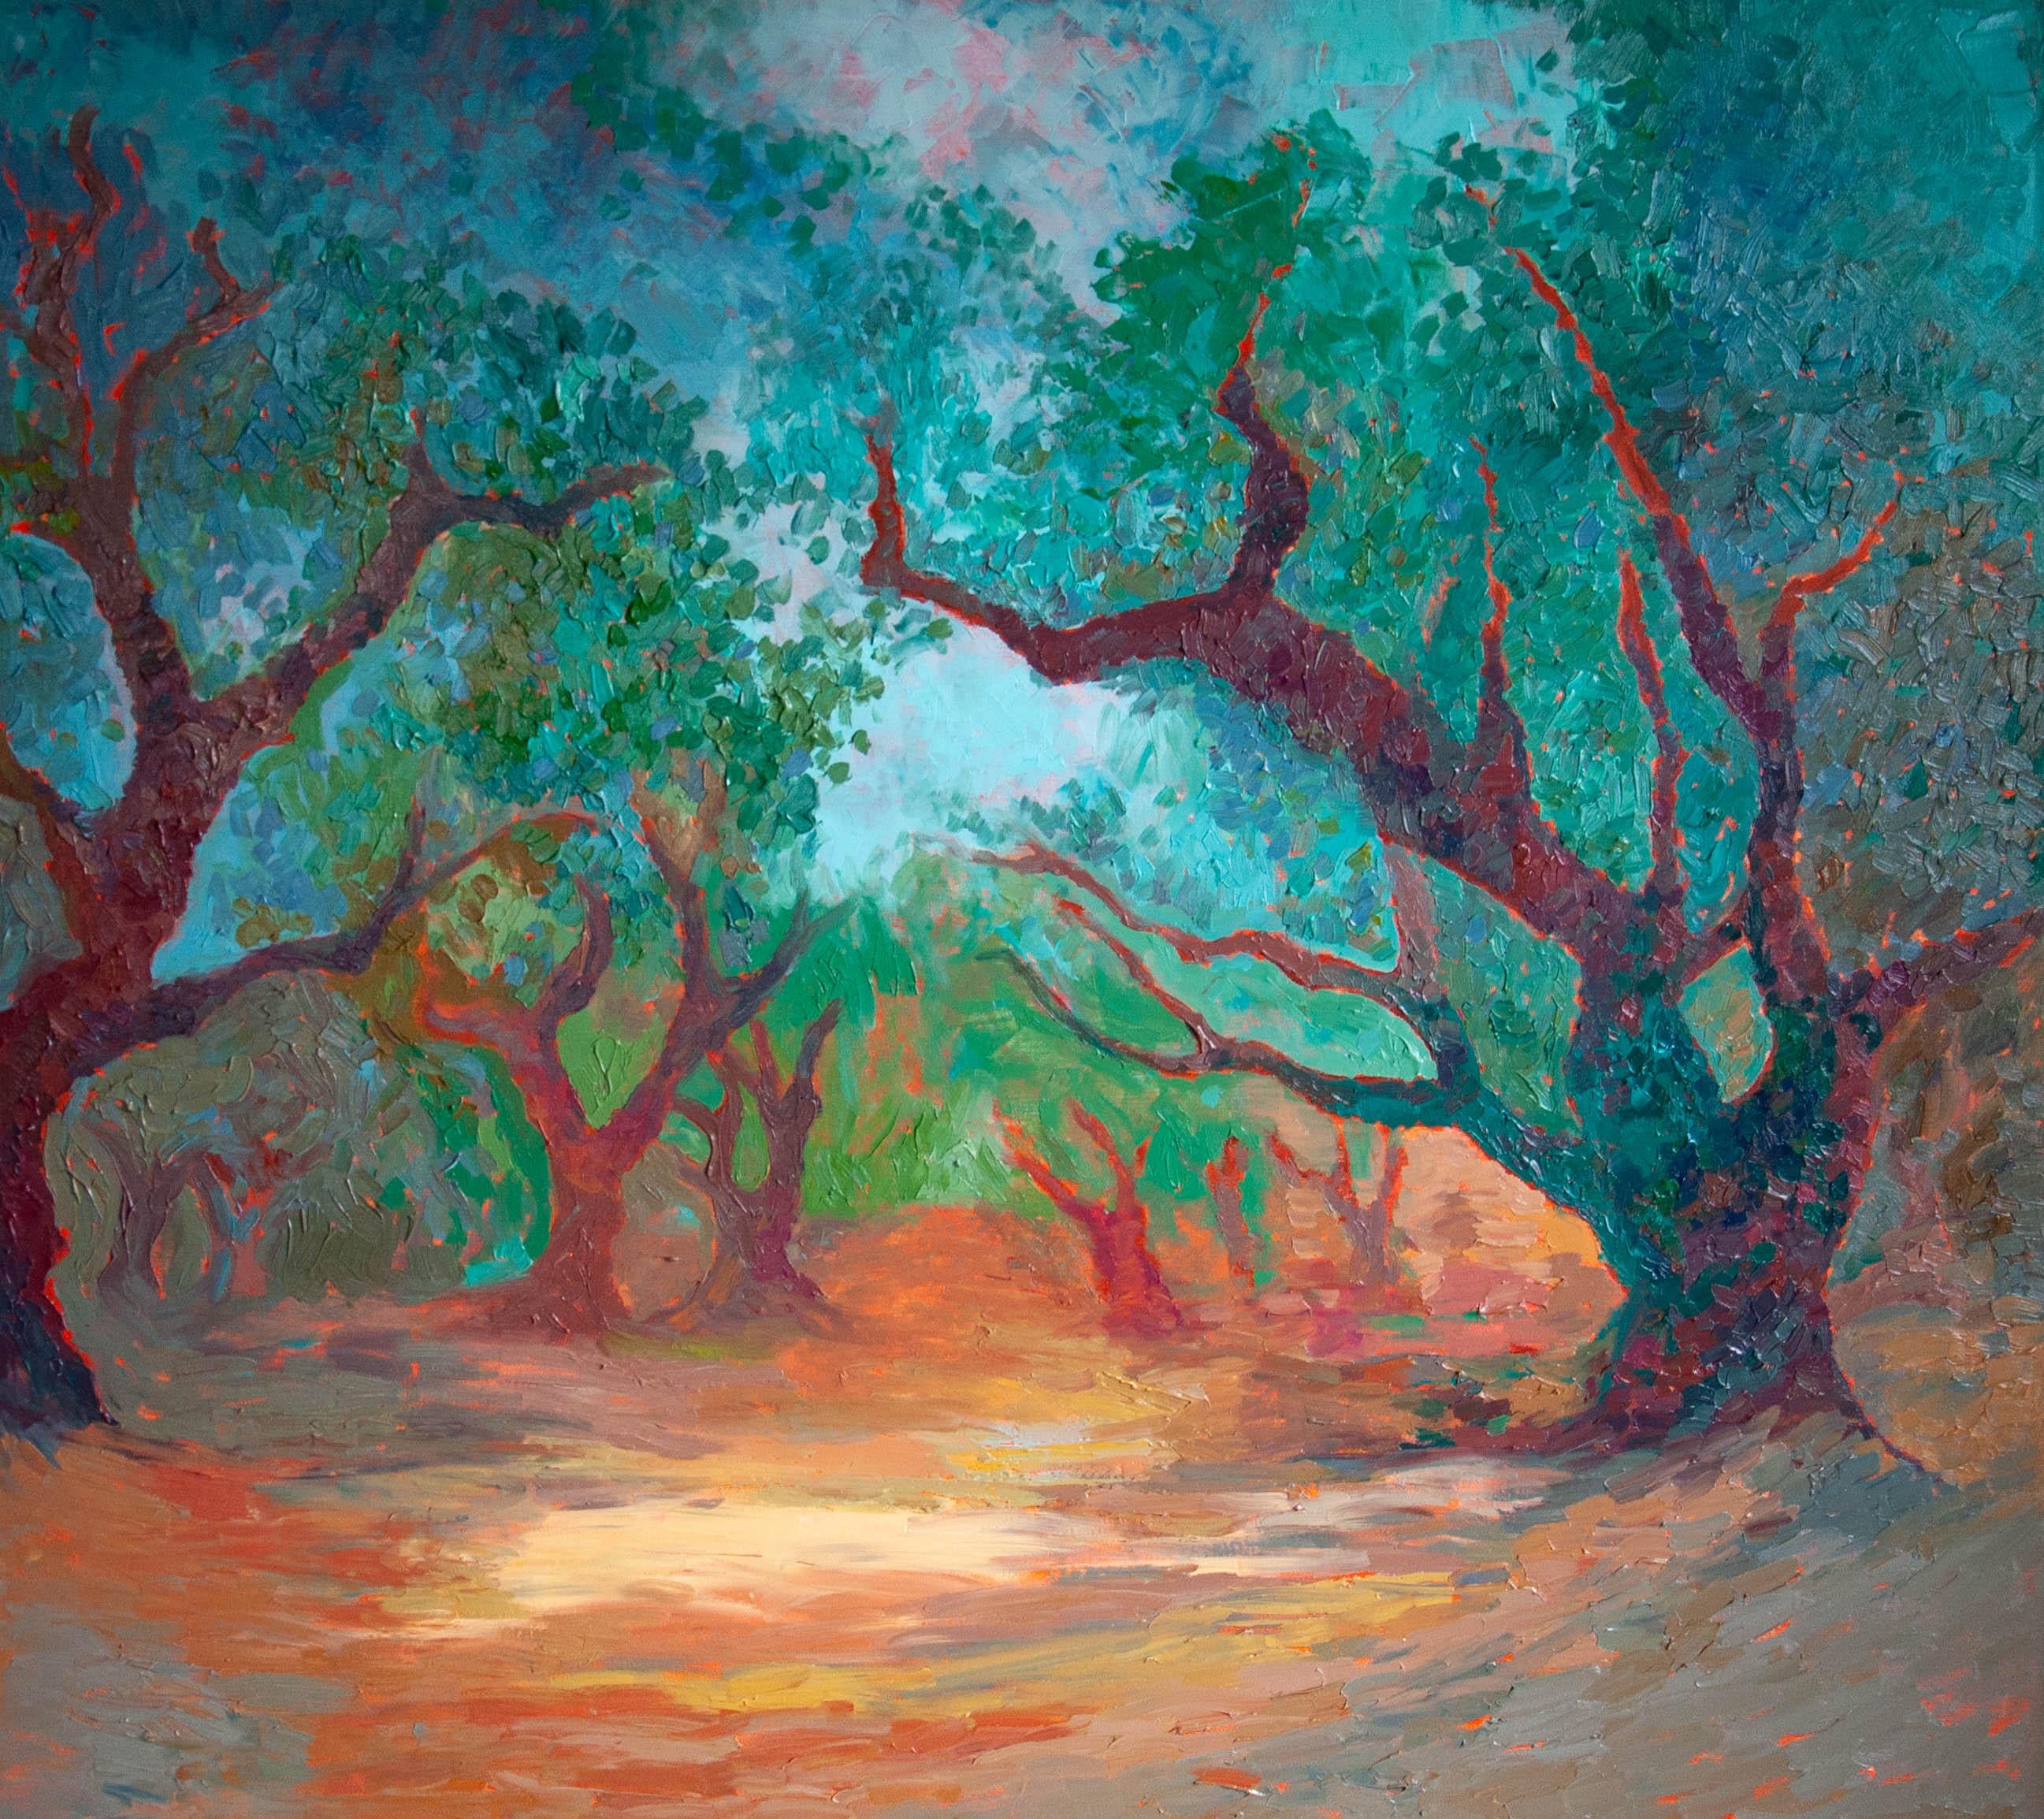 Peinture de paysage - SECRET GARDEN, huile sur toile - 40*32 in (100*80cm)